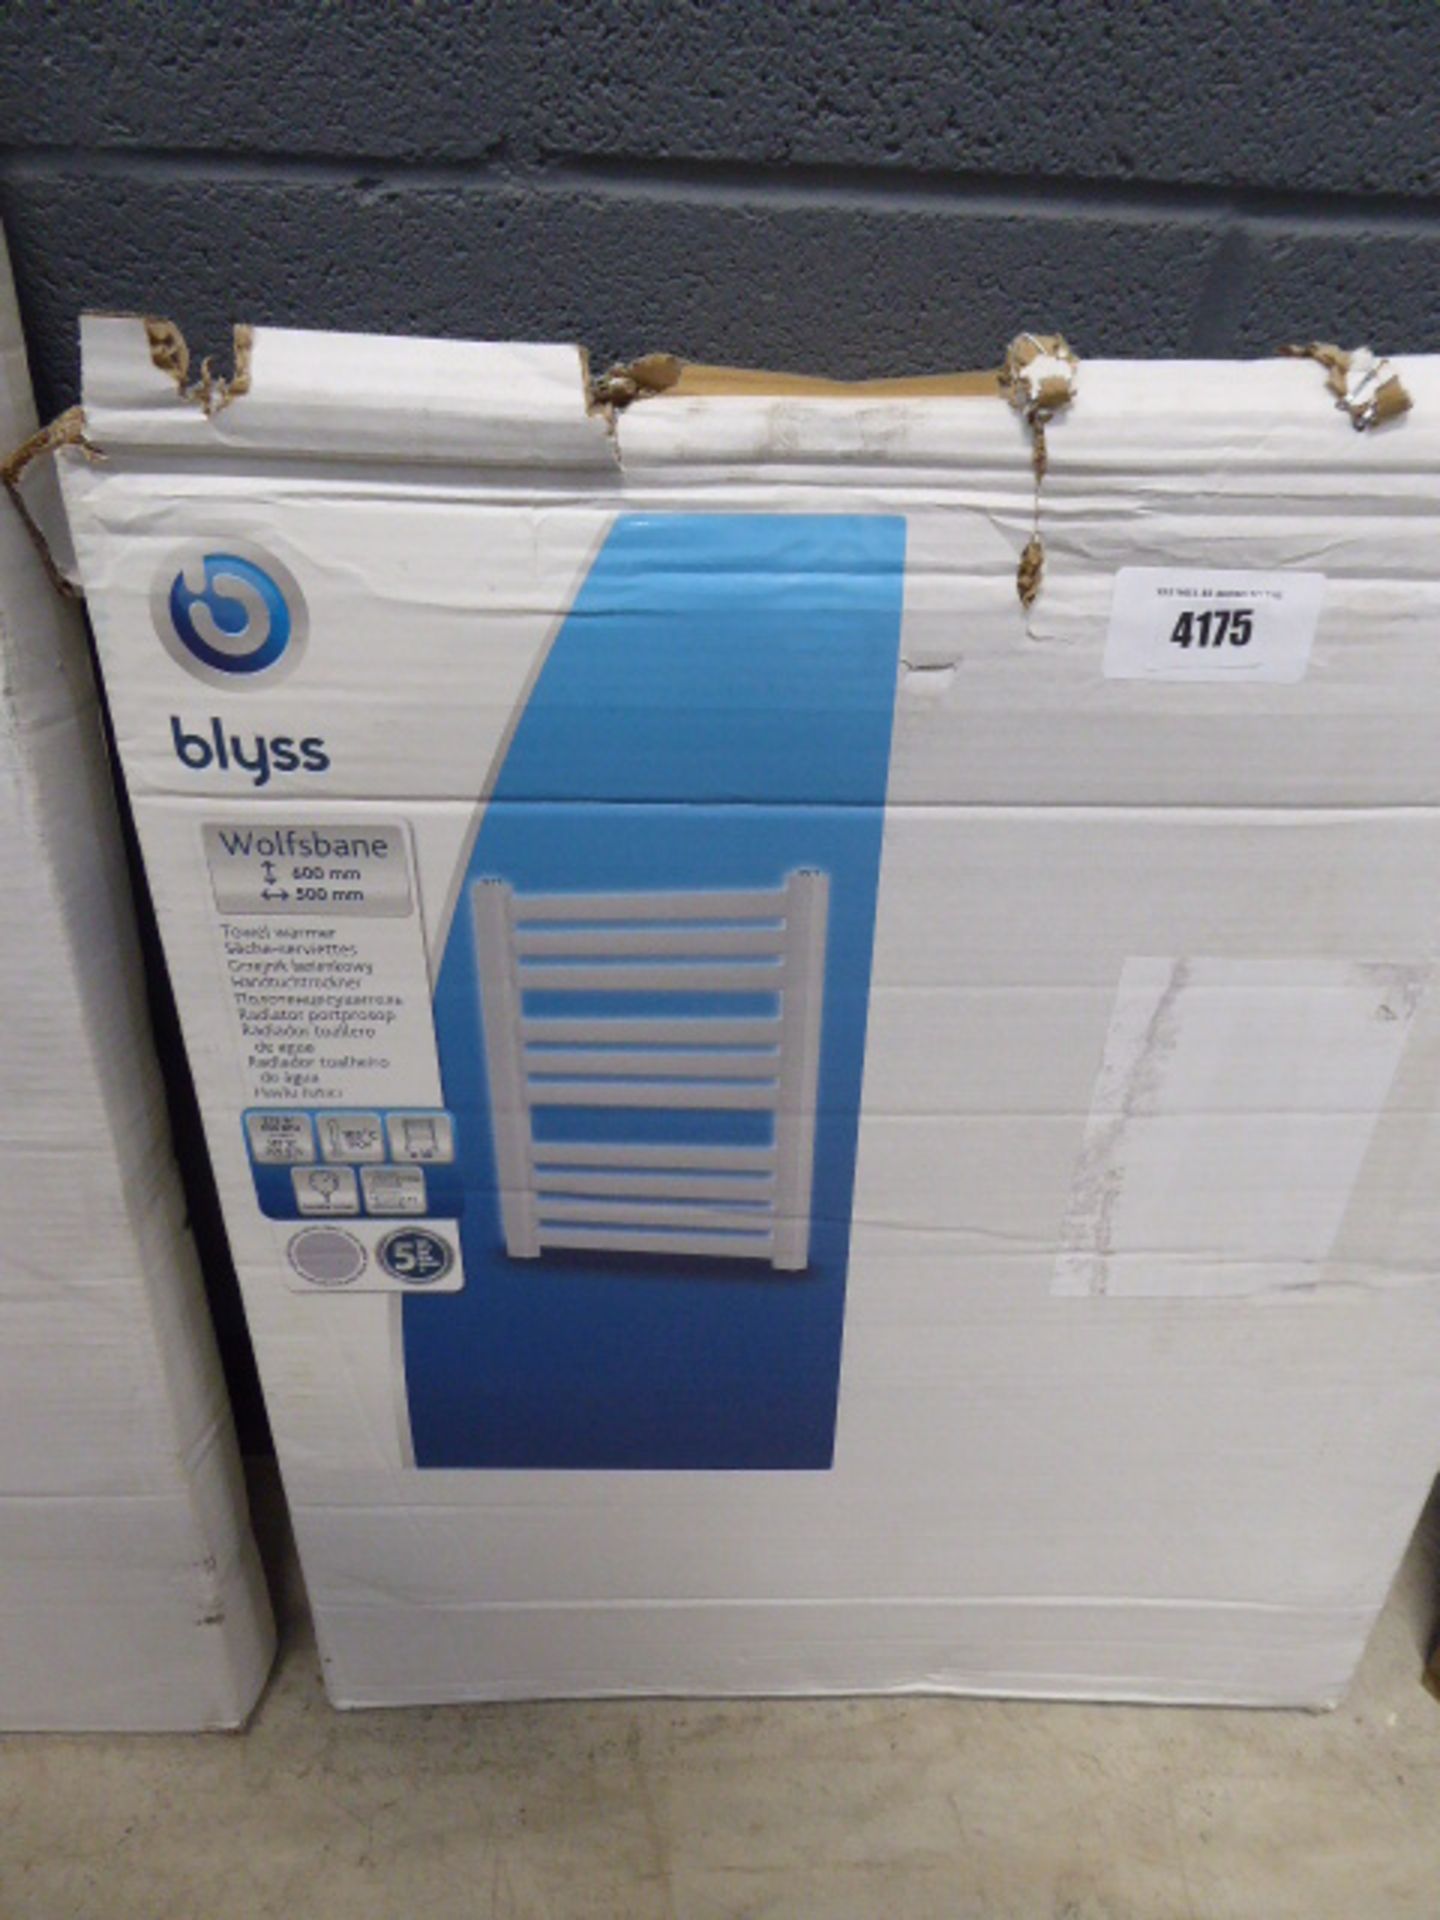 A Blyss 600 x 500mm towel radiator